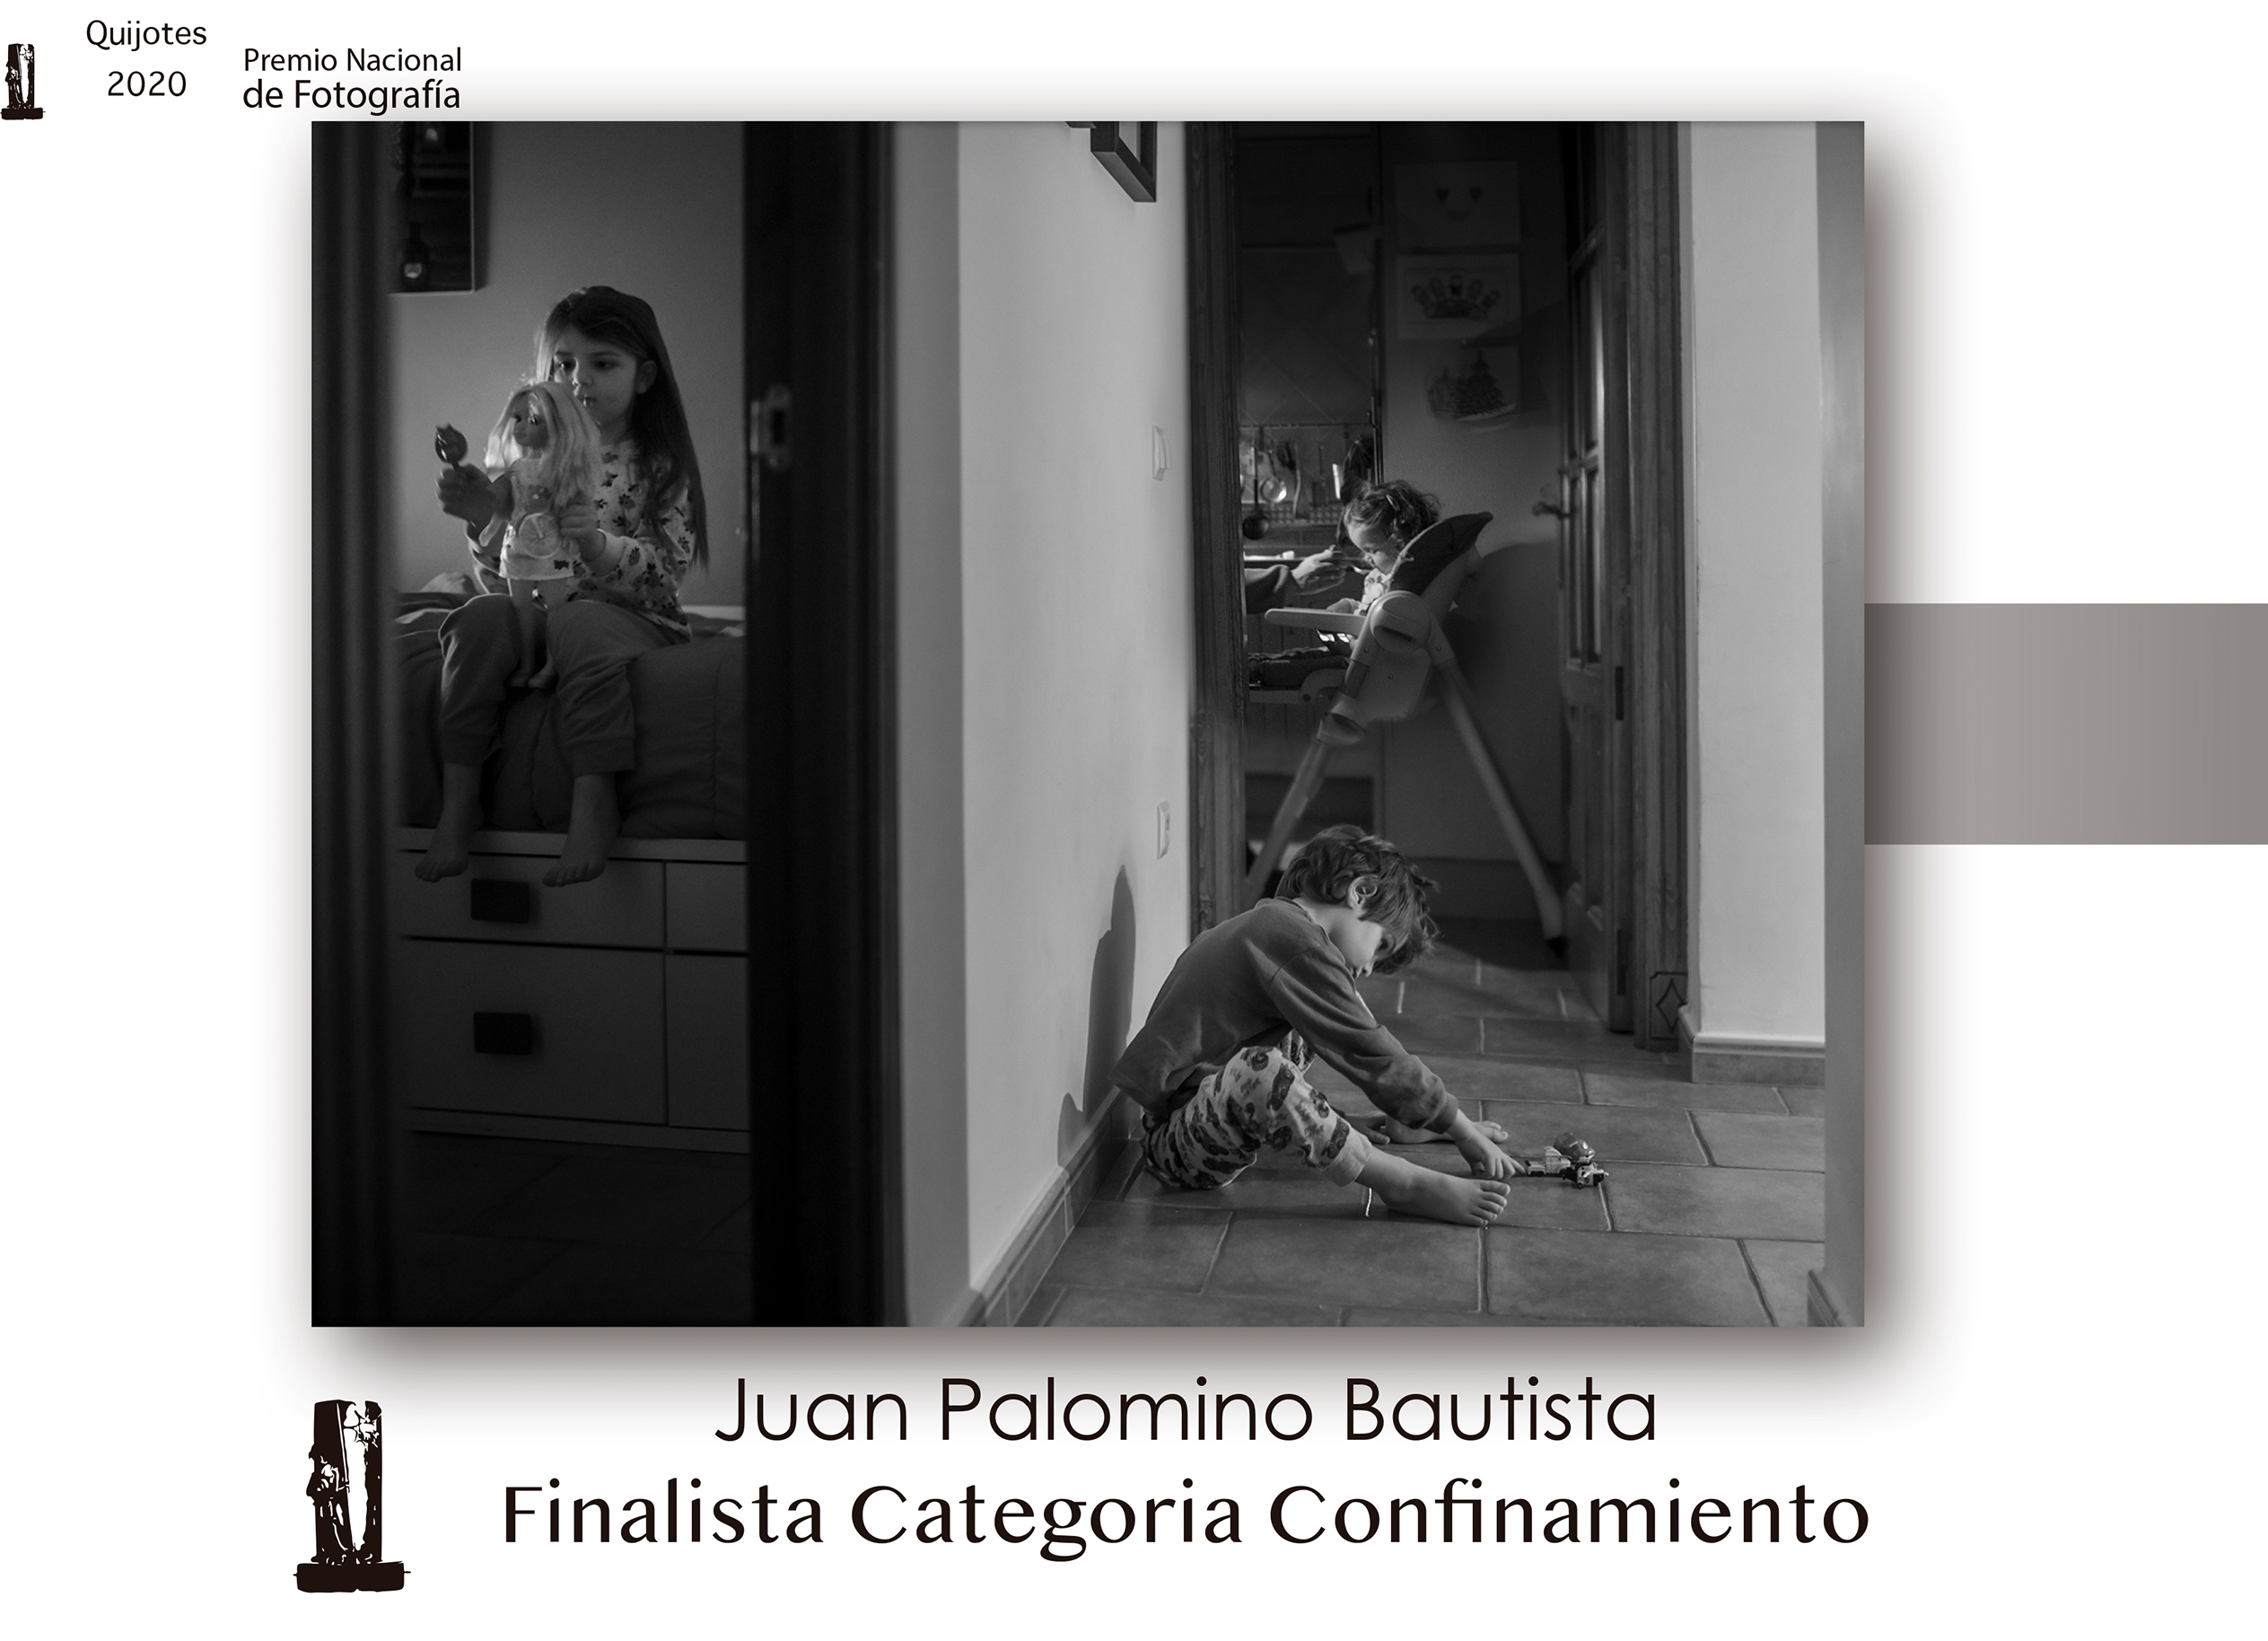 1º Premio Categoría Confinamiento - Juan Palomino Bautista